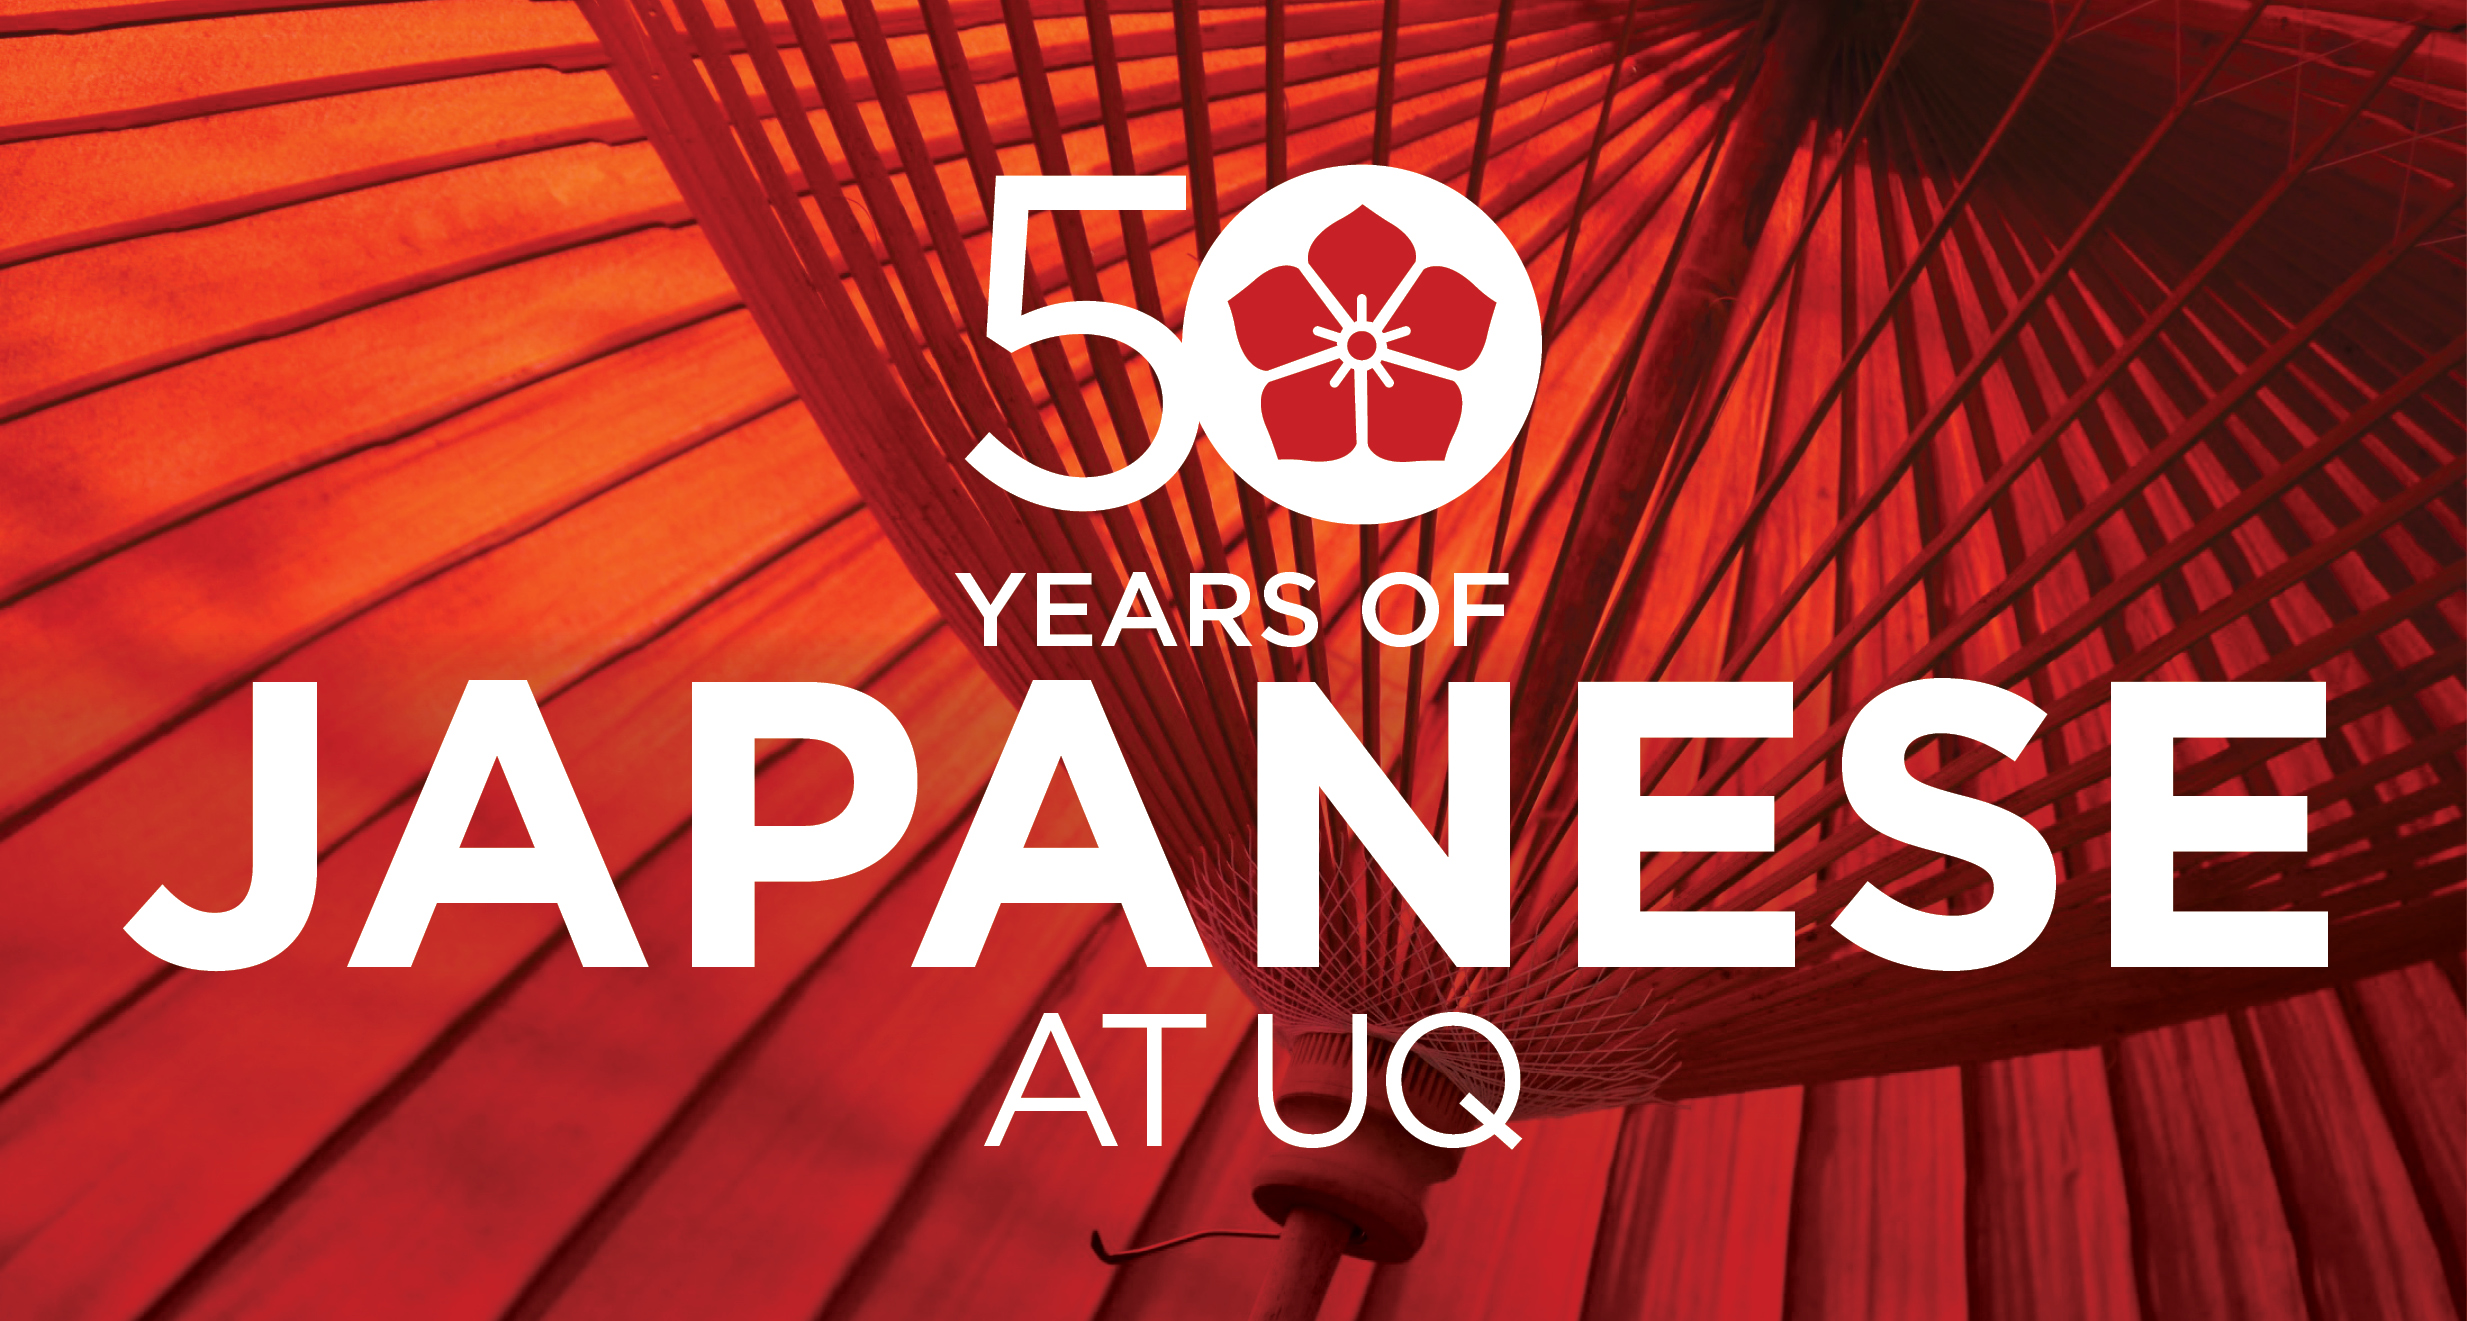 50 year anniversary of Japanese at UQ